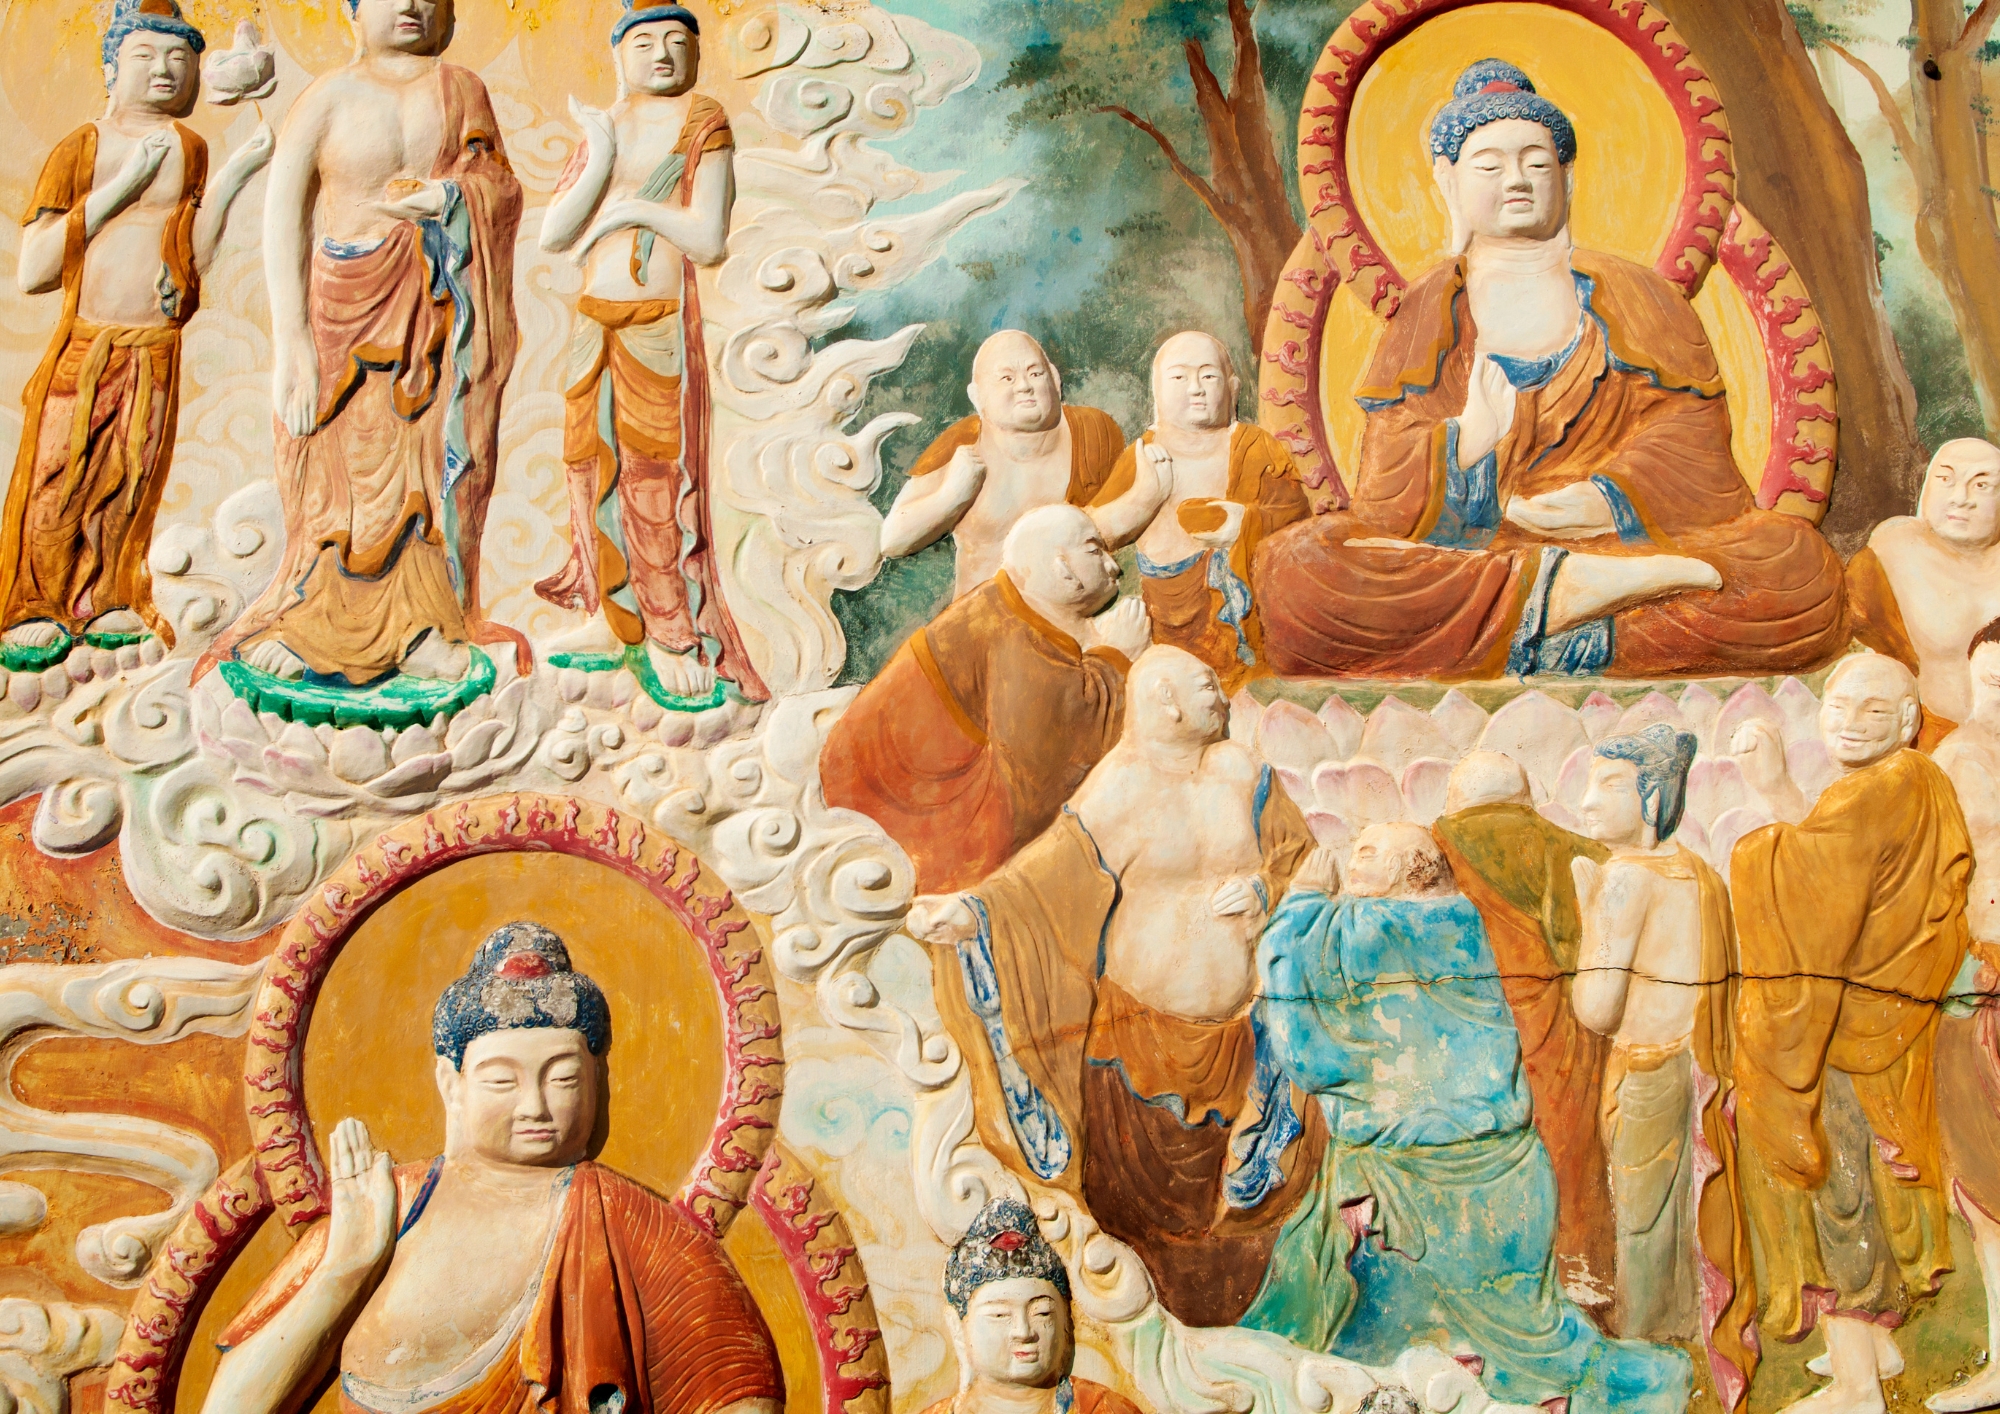 Tóm lại, sự khác biệt giữa triết lý và giáo lý trong Đạo Phật và các tôn giáo khác là điểm nhấn quan trọng, cho thấy sự đa dạng và sự phong phú trong con người và trong việc tìm kiếm ý nghĩa cuộc sống.